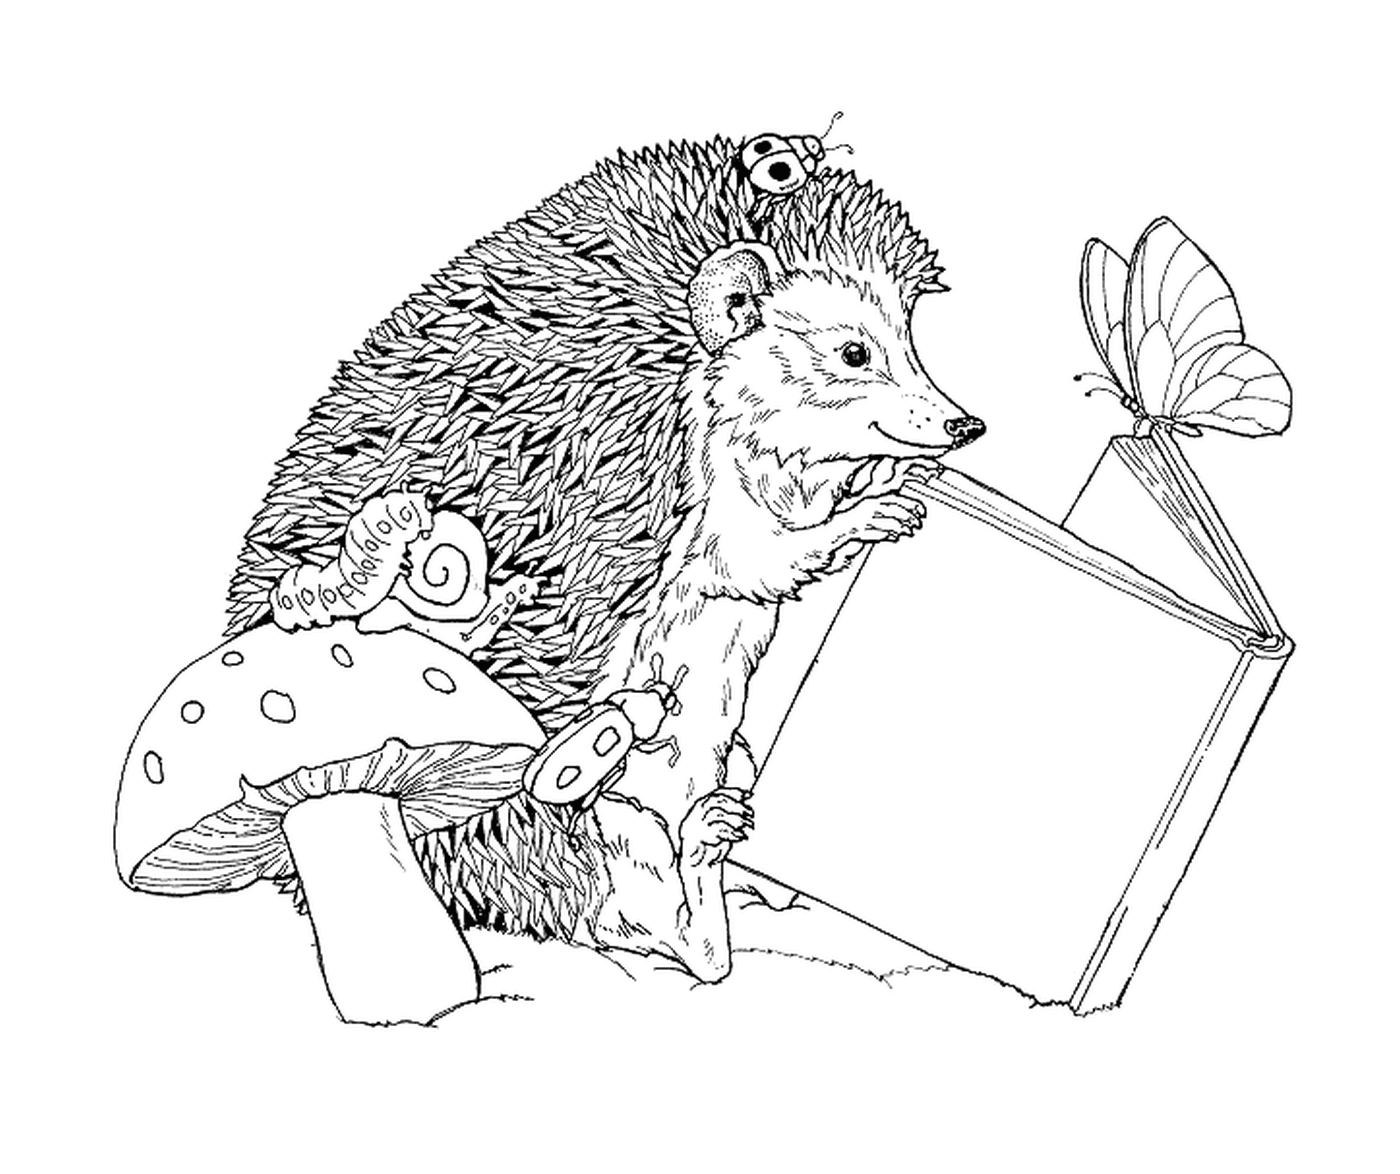  Hedgehog lendo um livro ao lado de um cogumelo 